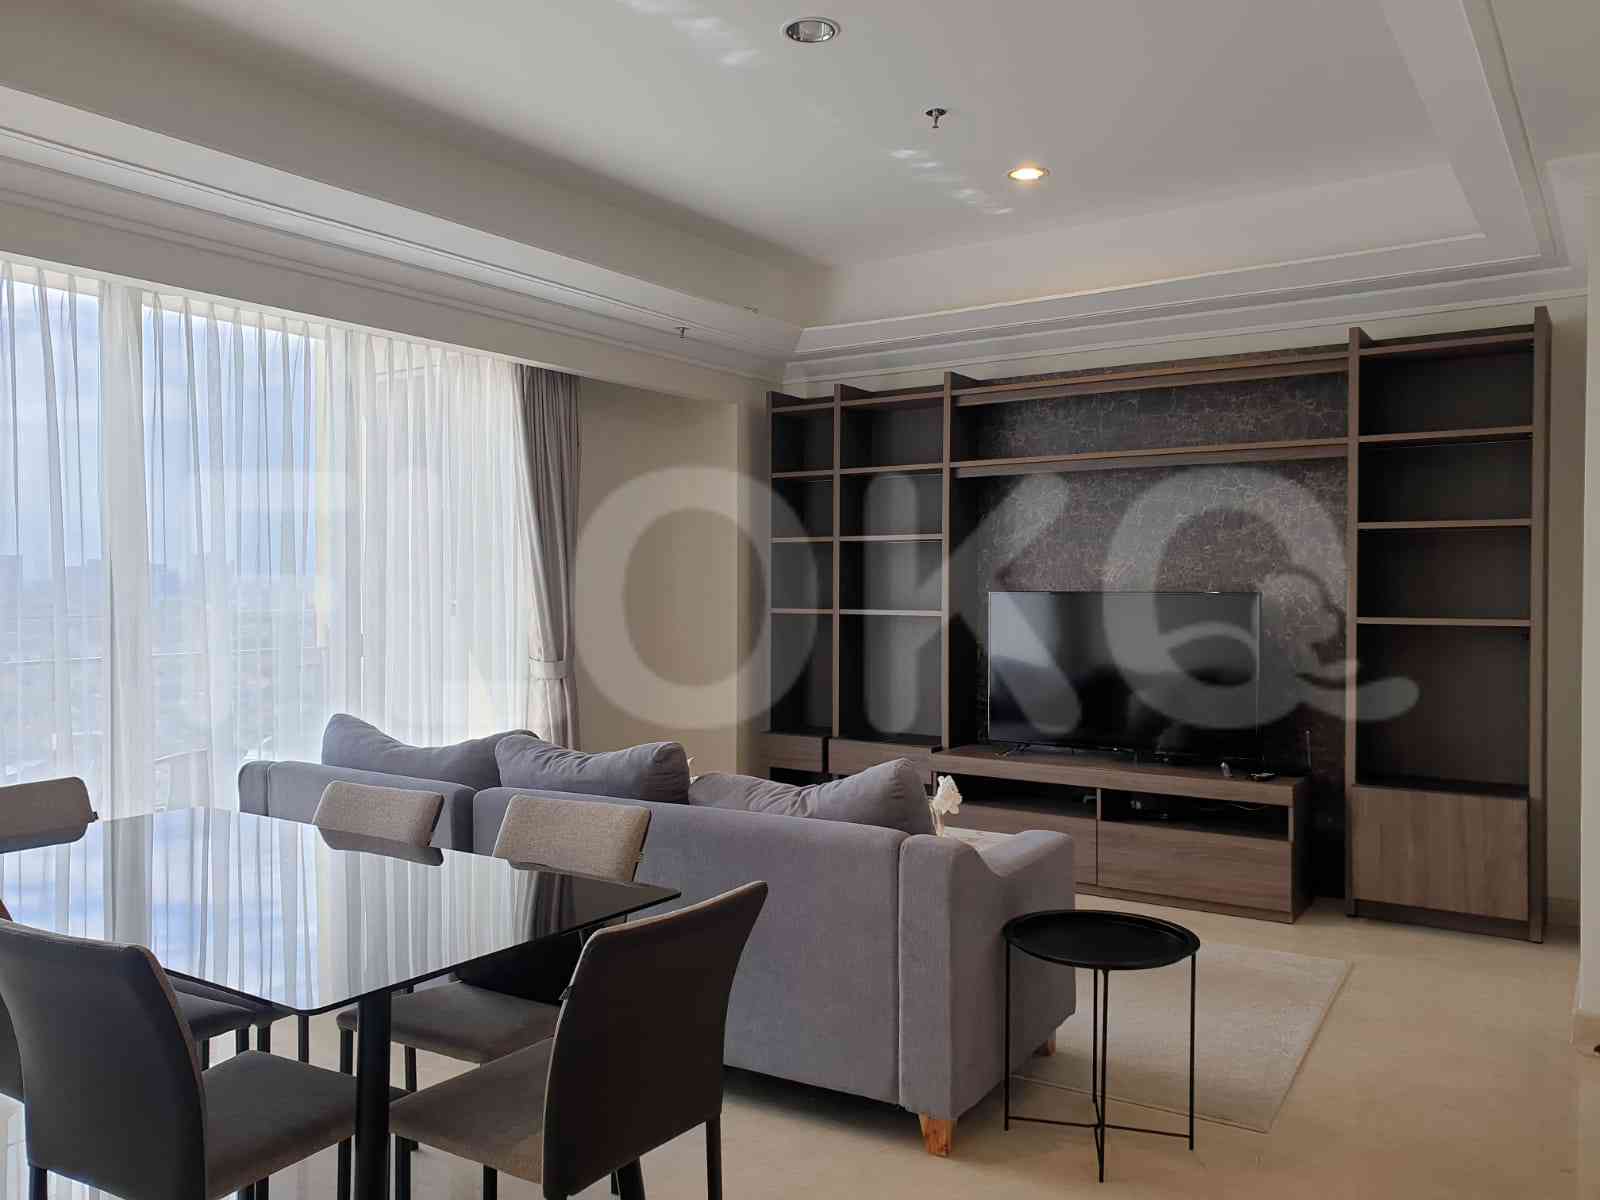 3 Bedroom on 15th Floor for Rent in Pondok Indah Residence - fpo34e 2